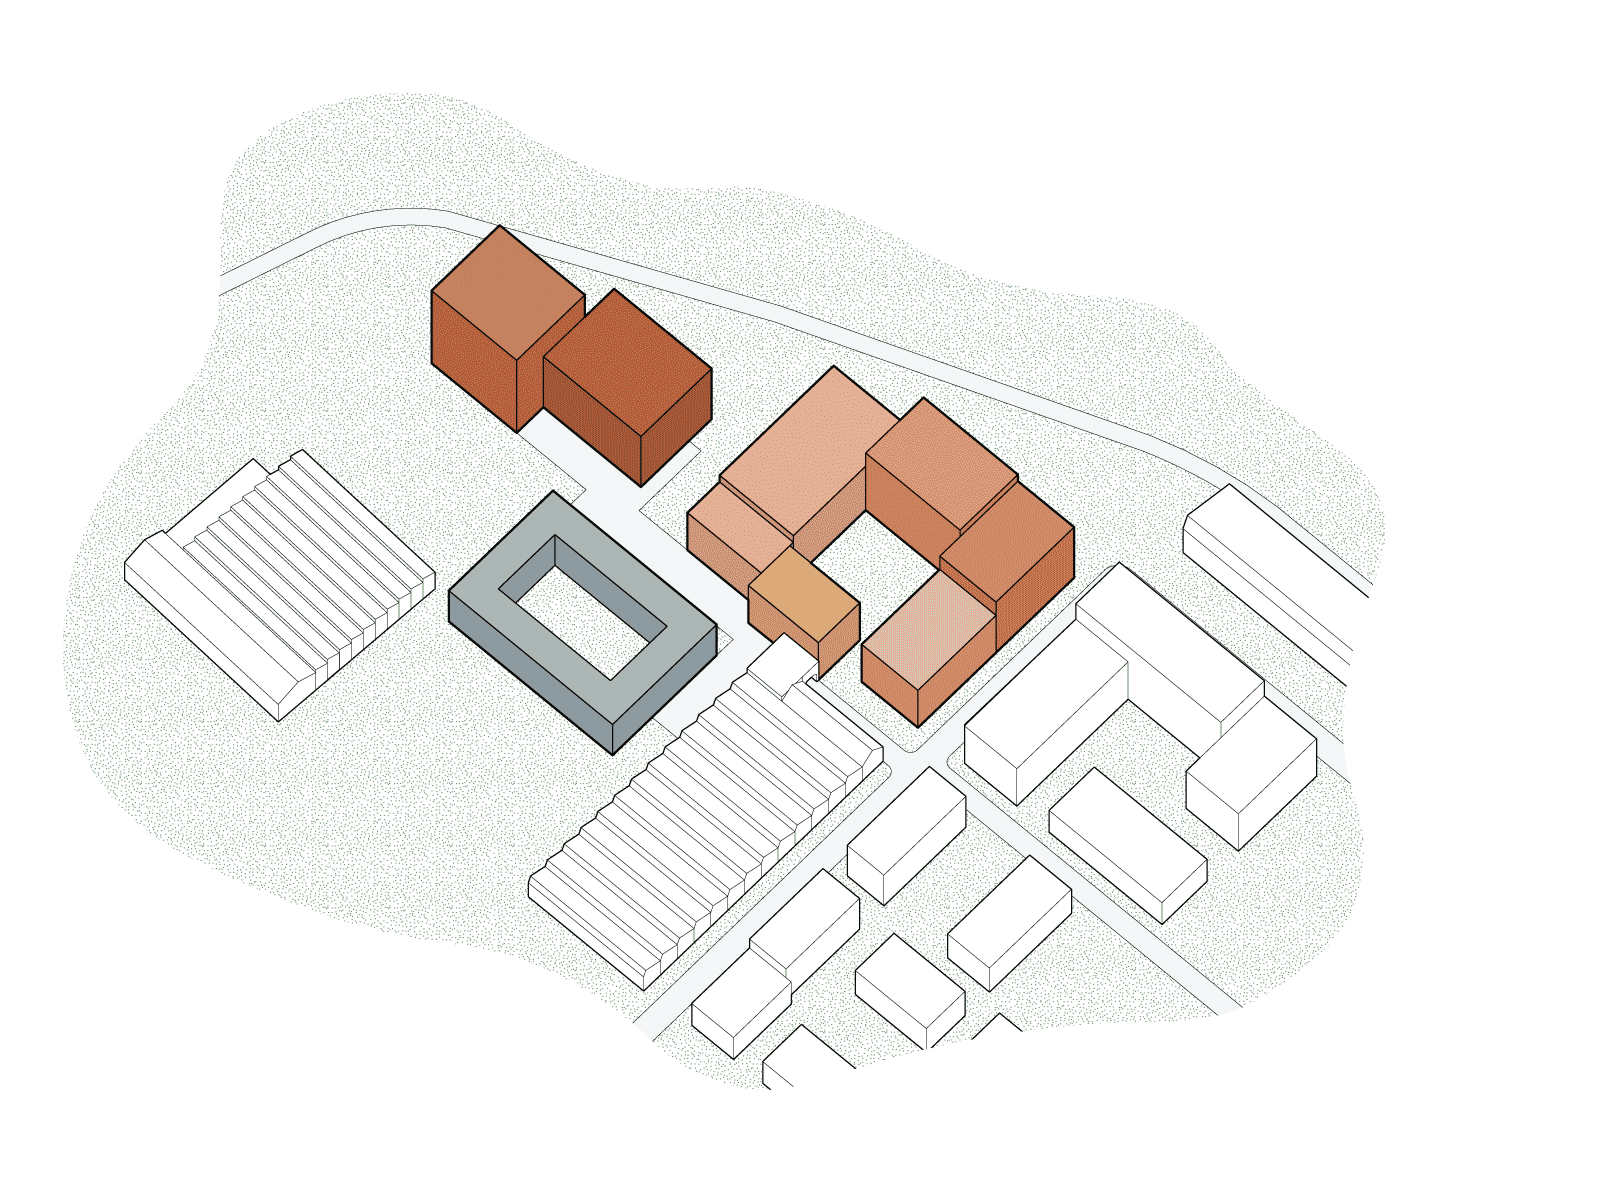 isometric scheme showing different buildings in wisselspoor utrecht project by beta architect amsterdam evert klinkenberg gus auguste van oppen